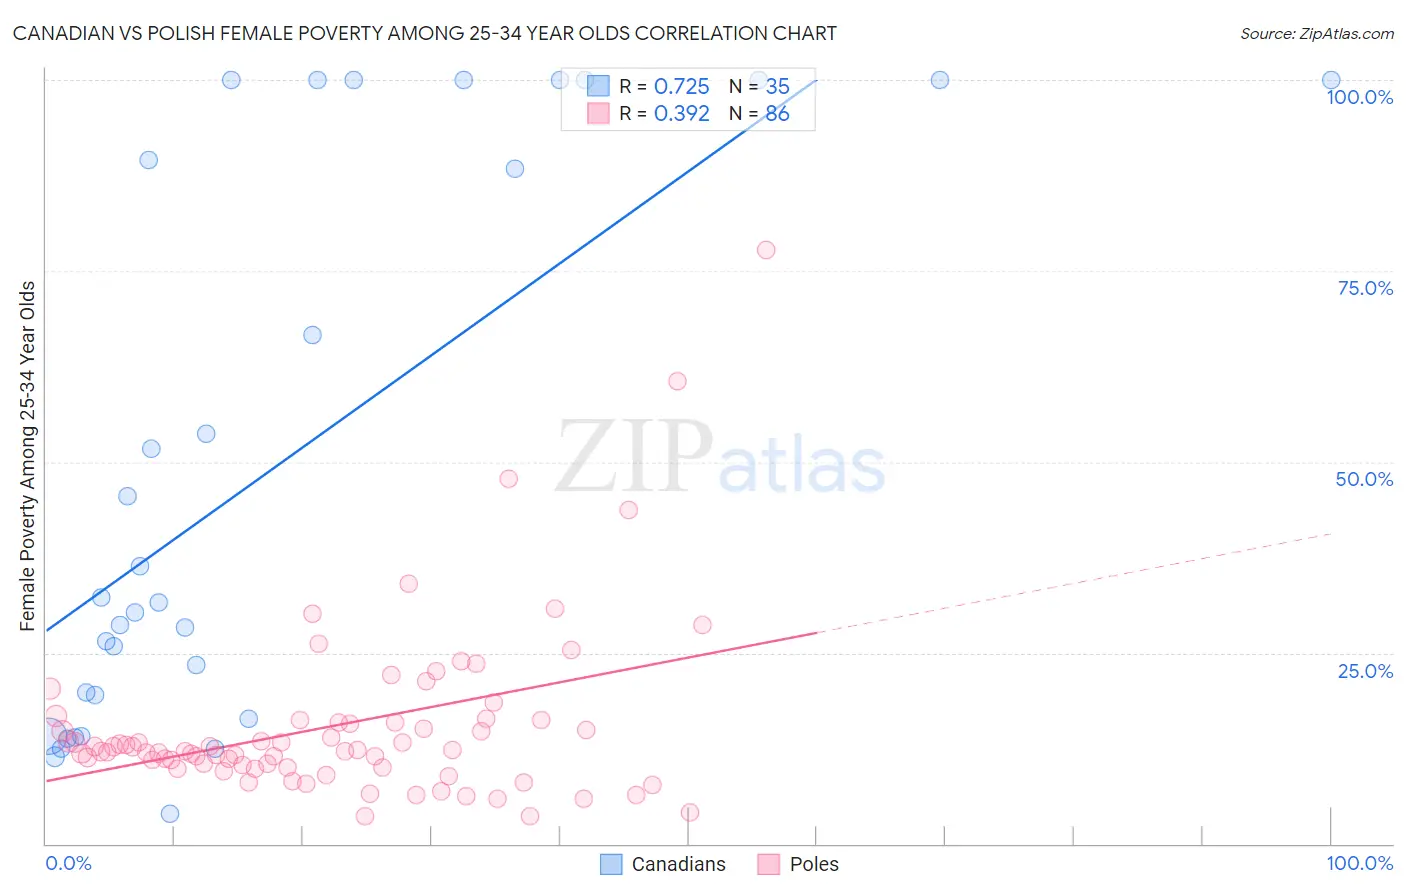 Canadian vs Polish Female Poverty Among 25-34 Year Olds